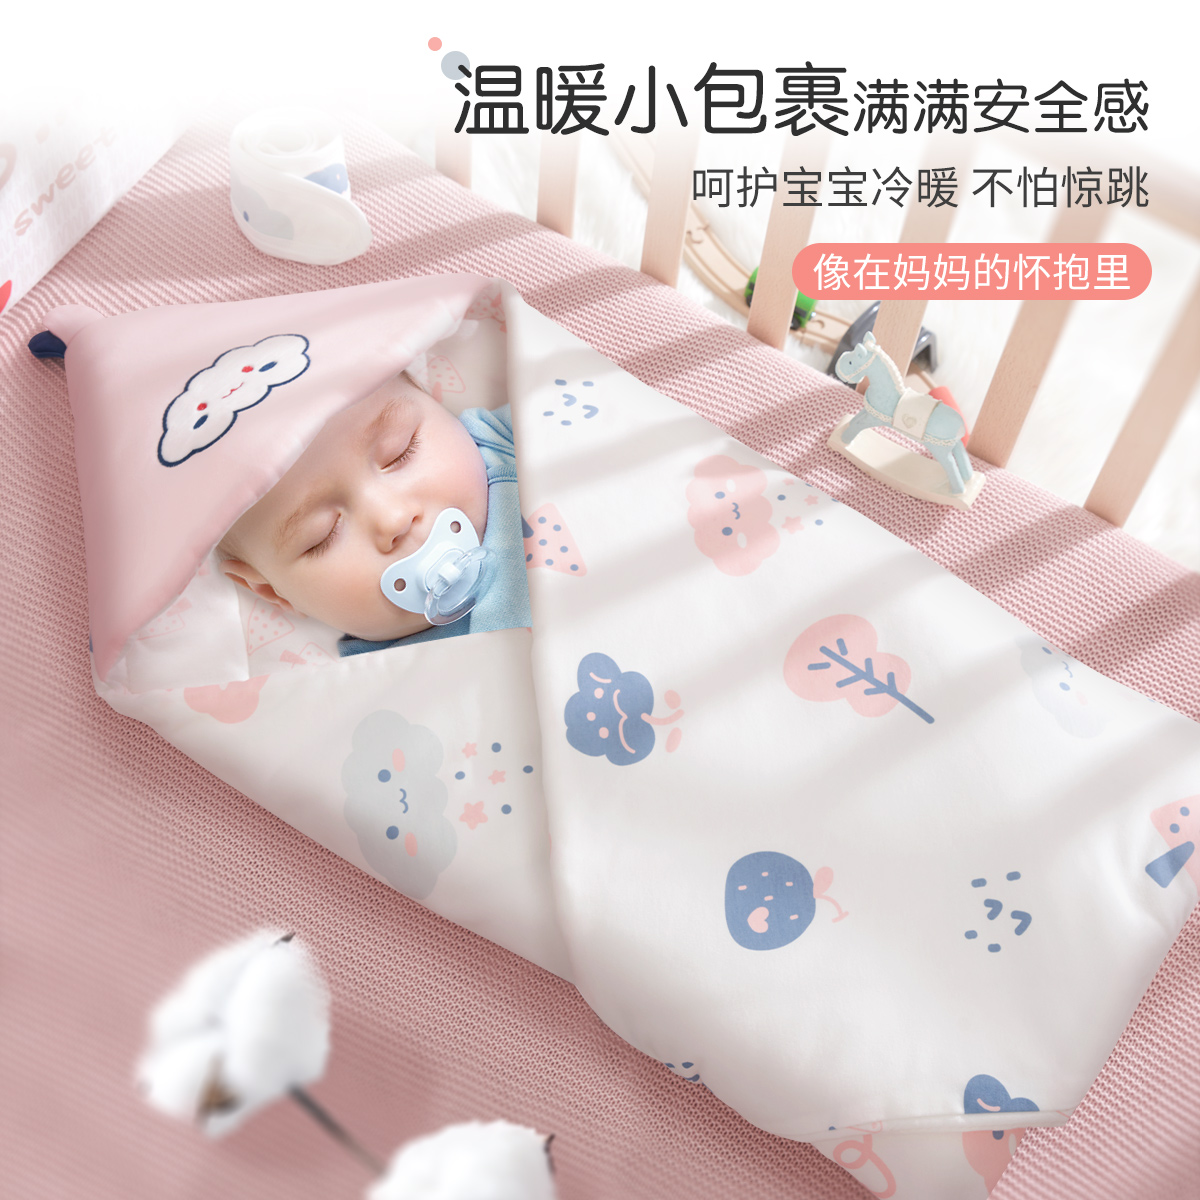 新生儿纯棉抱被产房婴儿包被初生宝宝外出抱毯被子包裹用品春夏秋